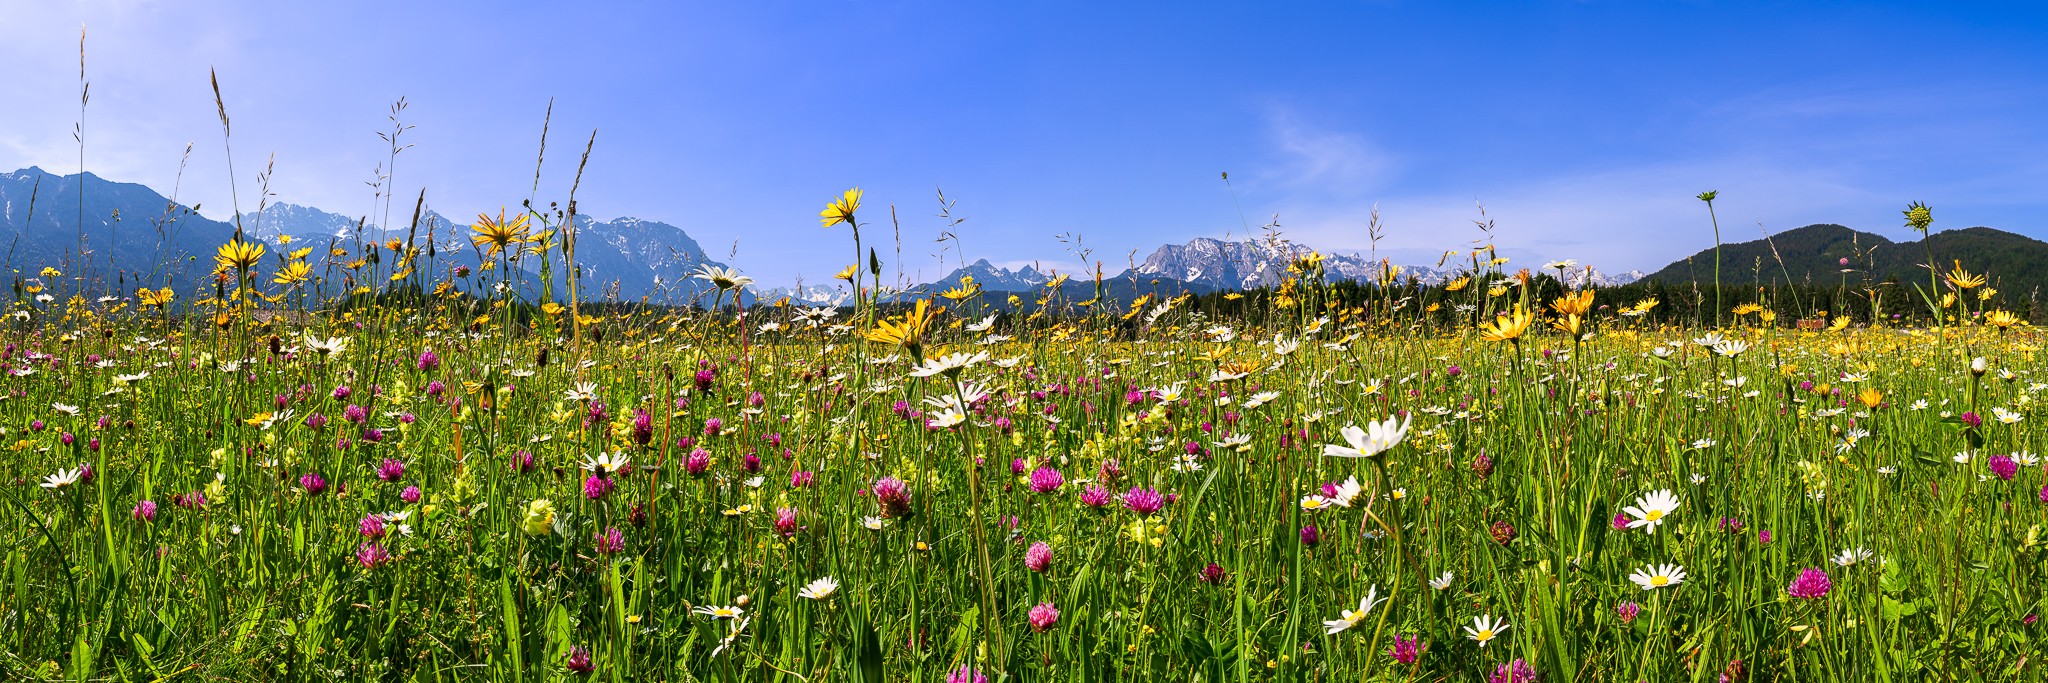 Blumenwiese in den bayerischen Bergen bei Krün. Hier blühen Margeriten, Wiesen-Bocksbart, Klee, Klappertopf, Witwenblumen.